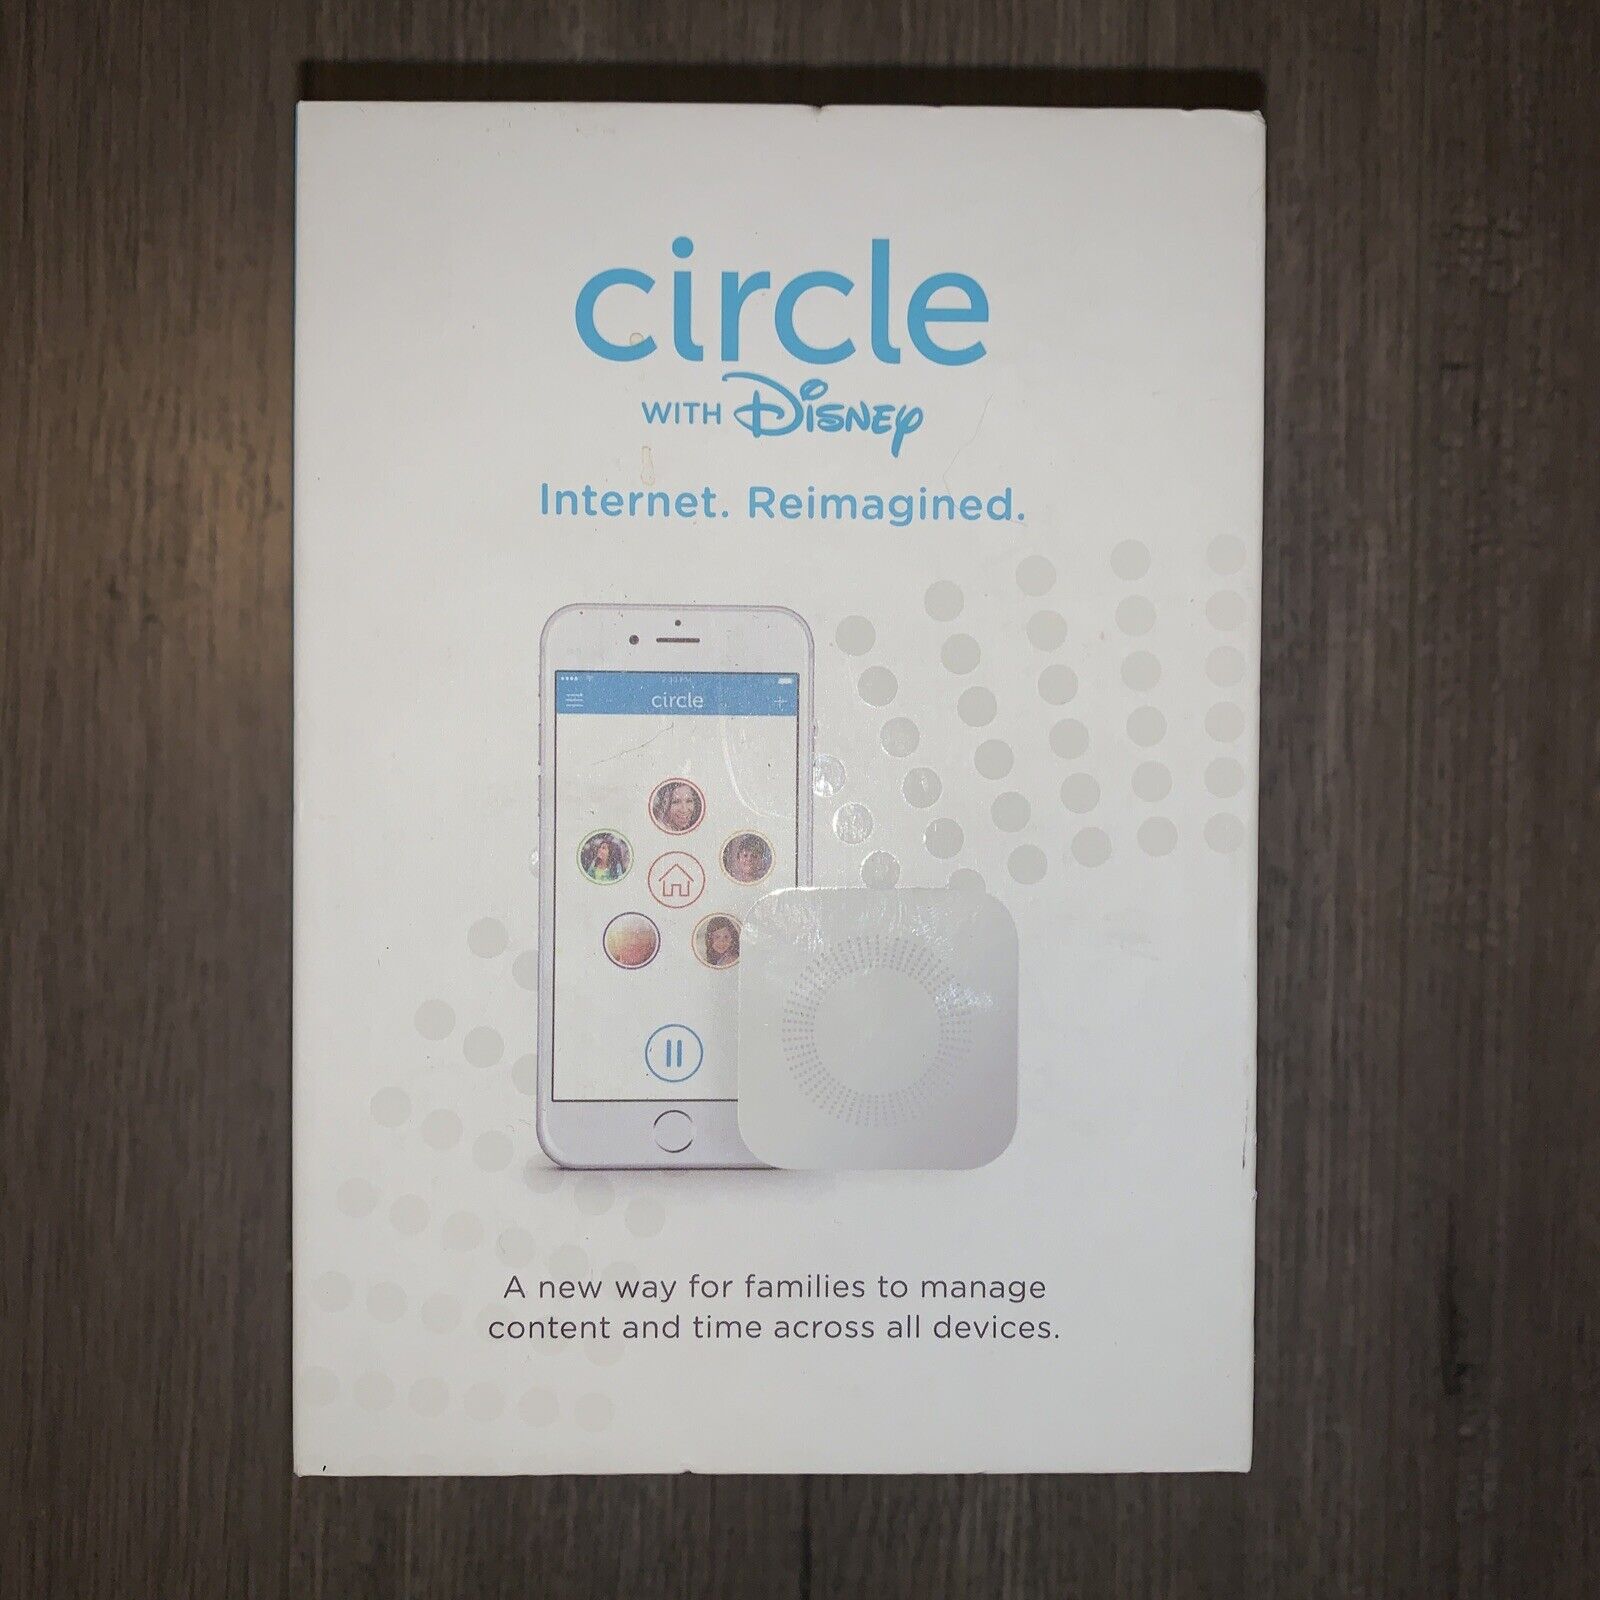 Circle with Disney Smart Home Internet Filter & Parental Controls V1 1st Gen